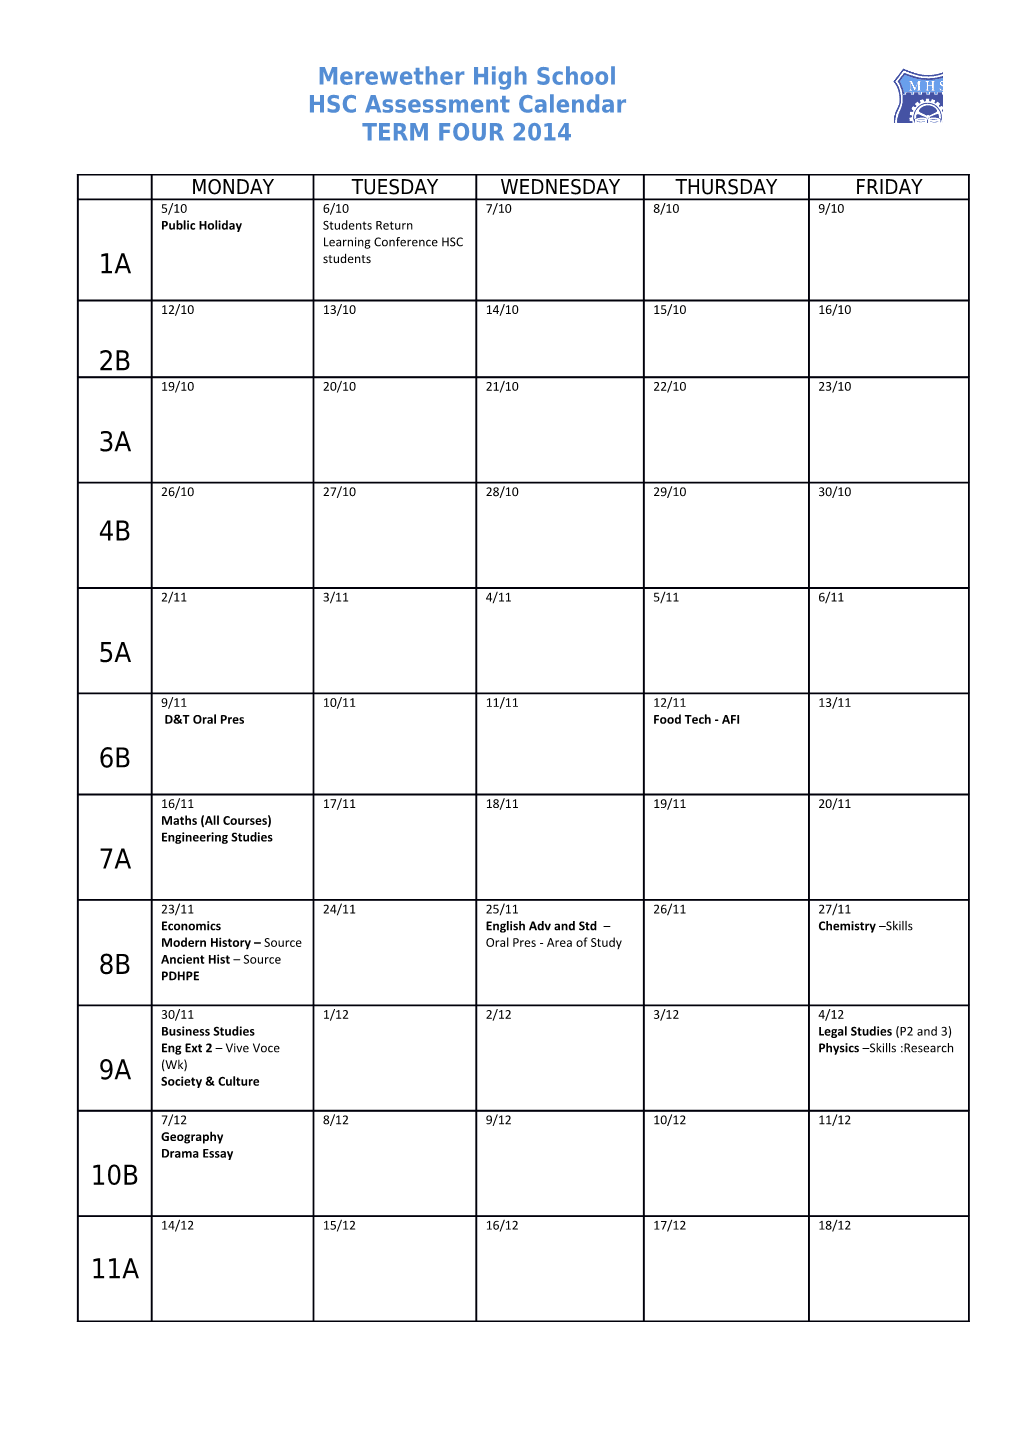 HSC Assessment Calendar